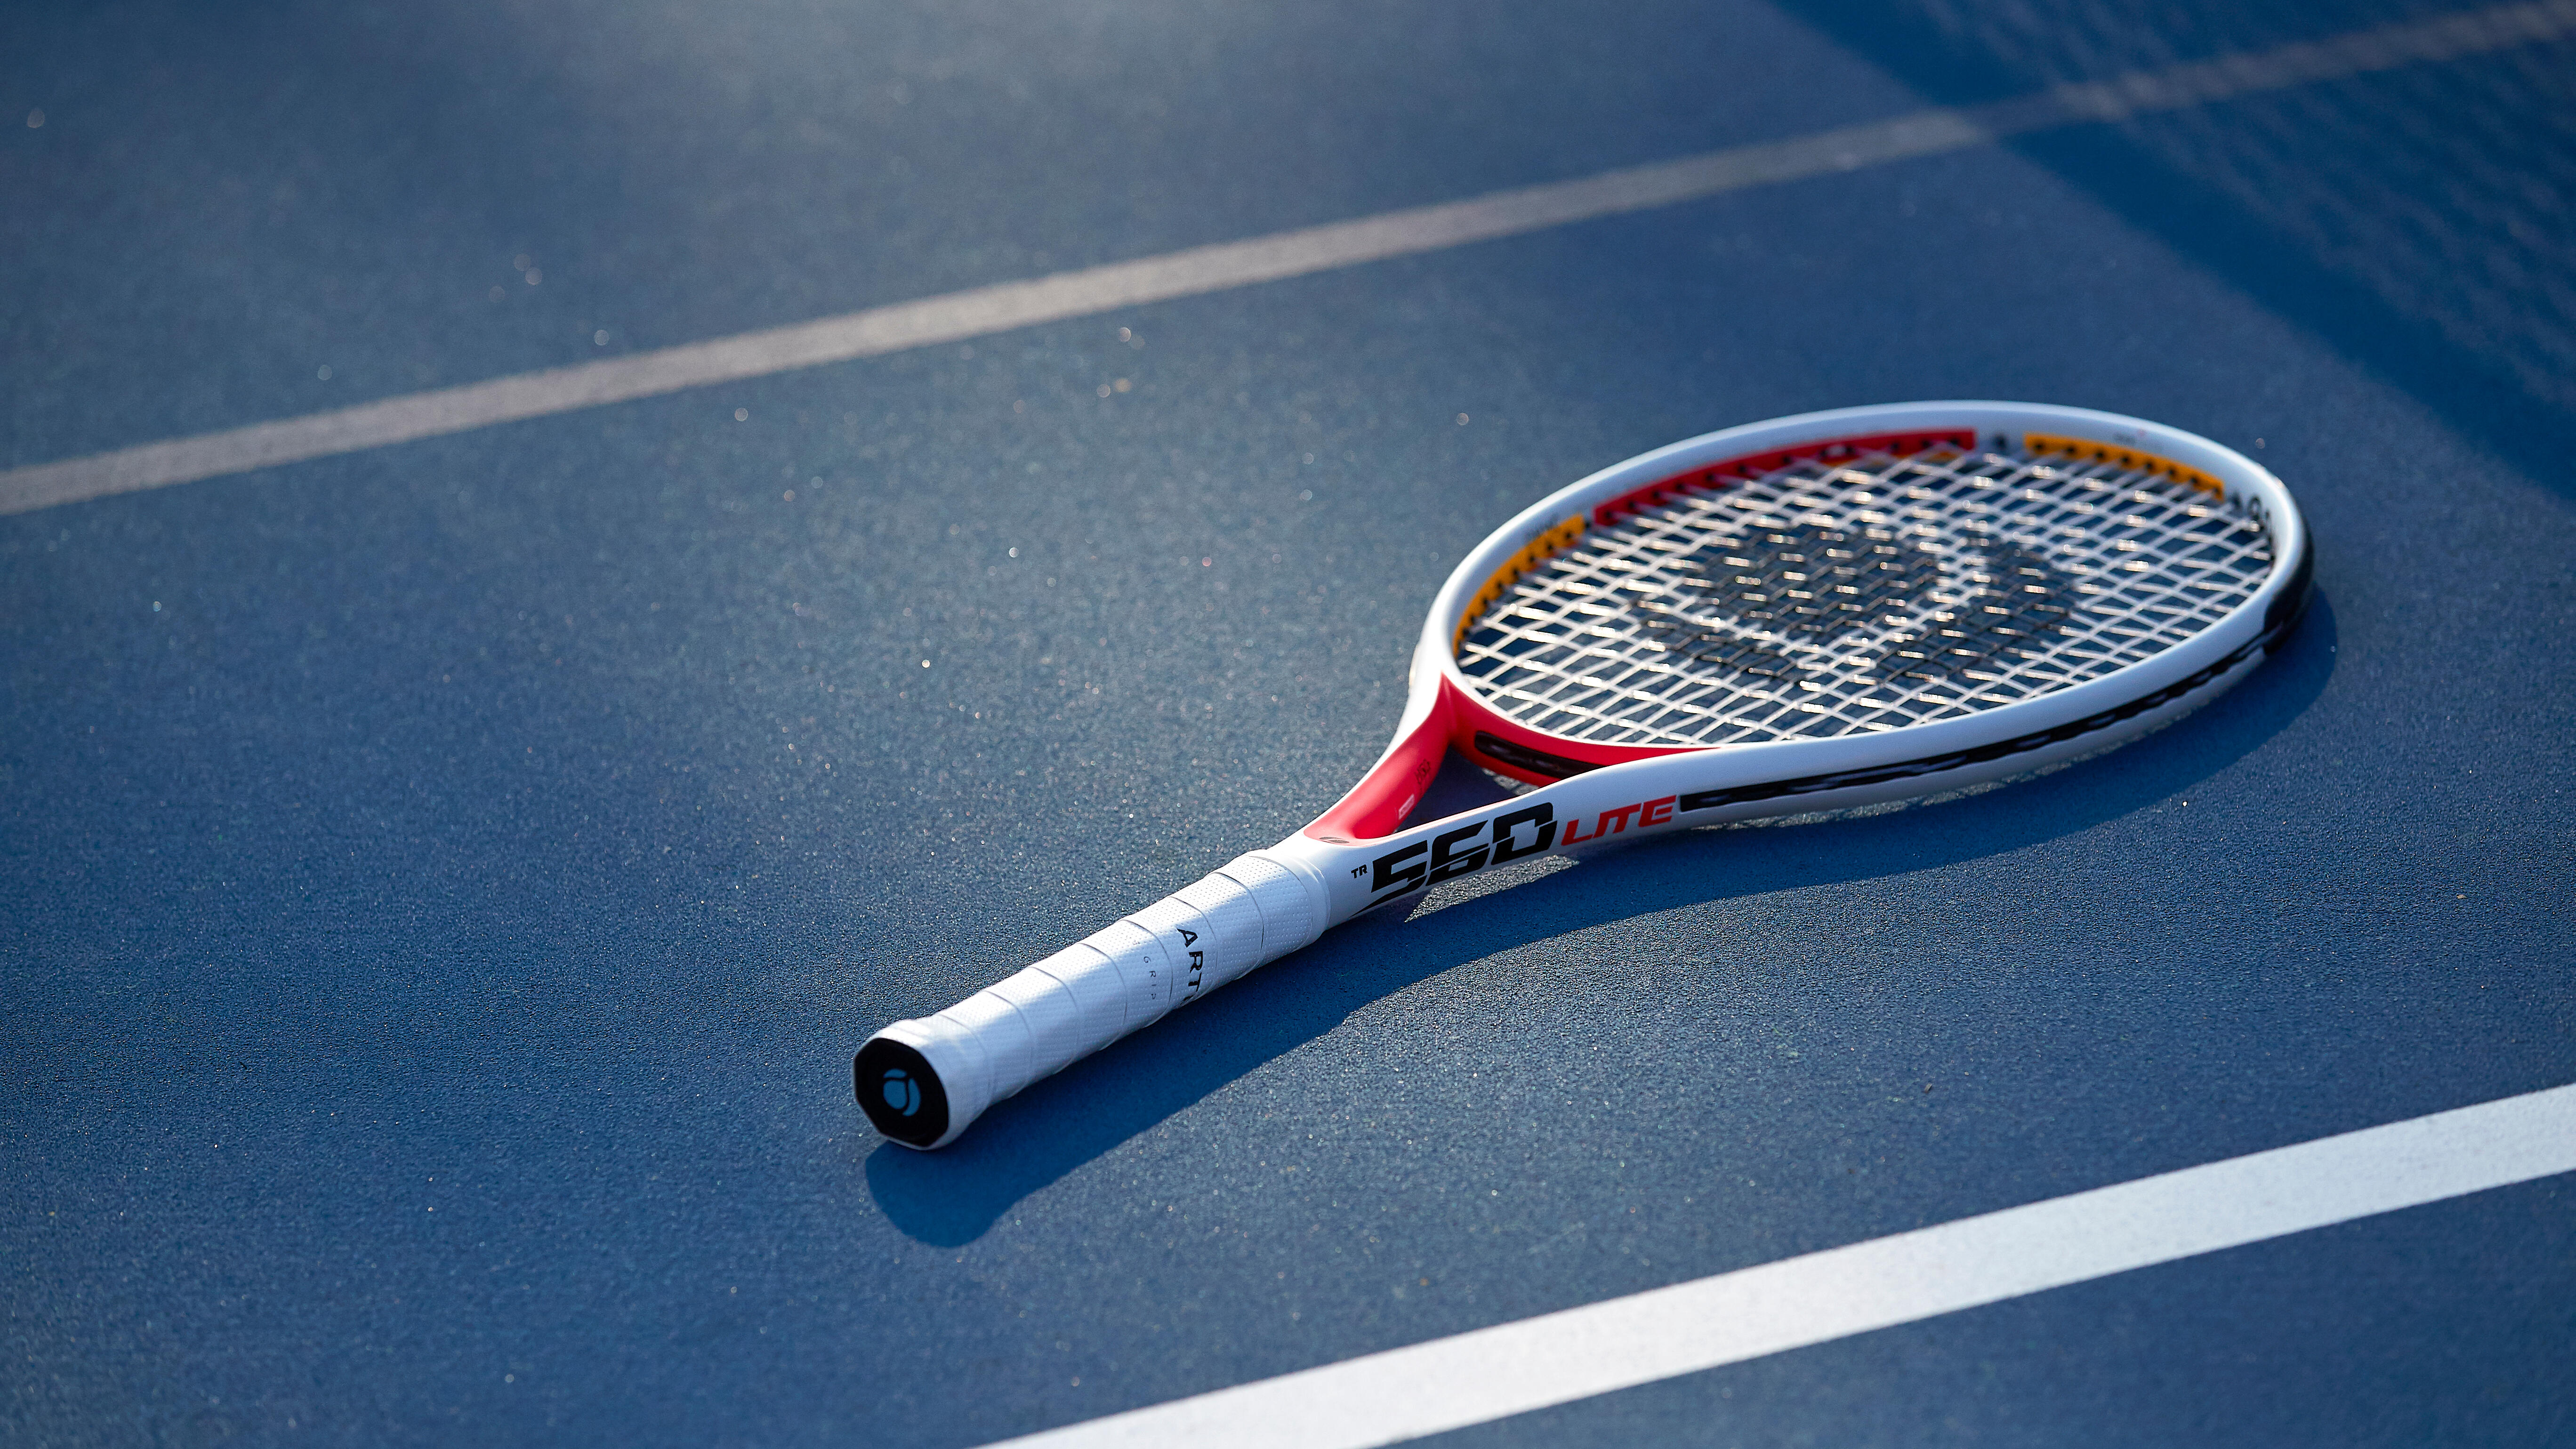 Comment choisir un grip ou surgrip de tennis ?